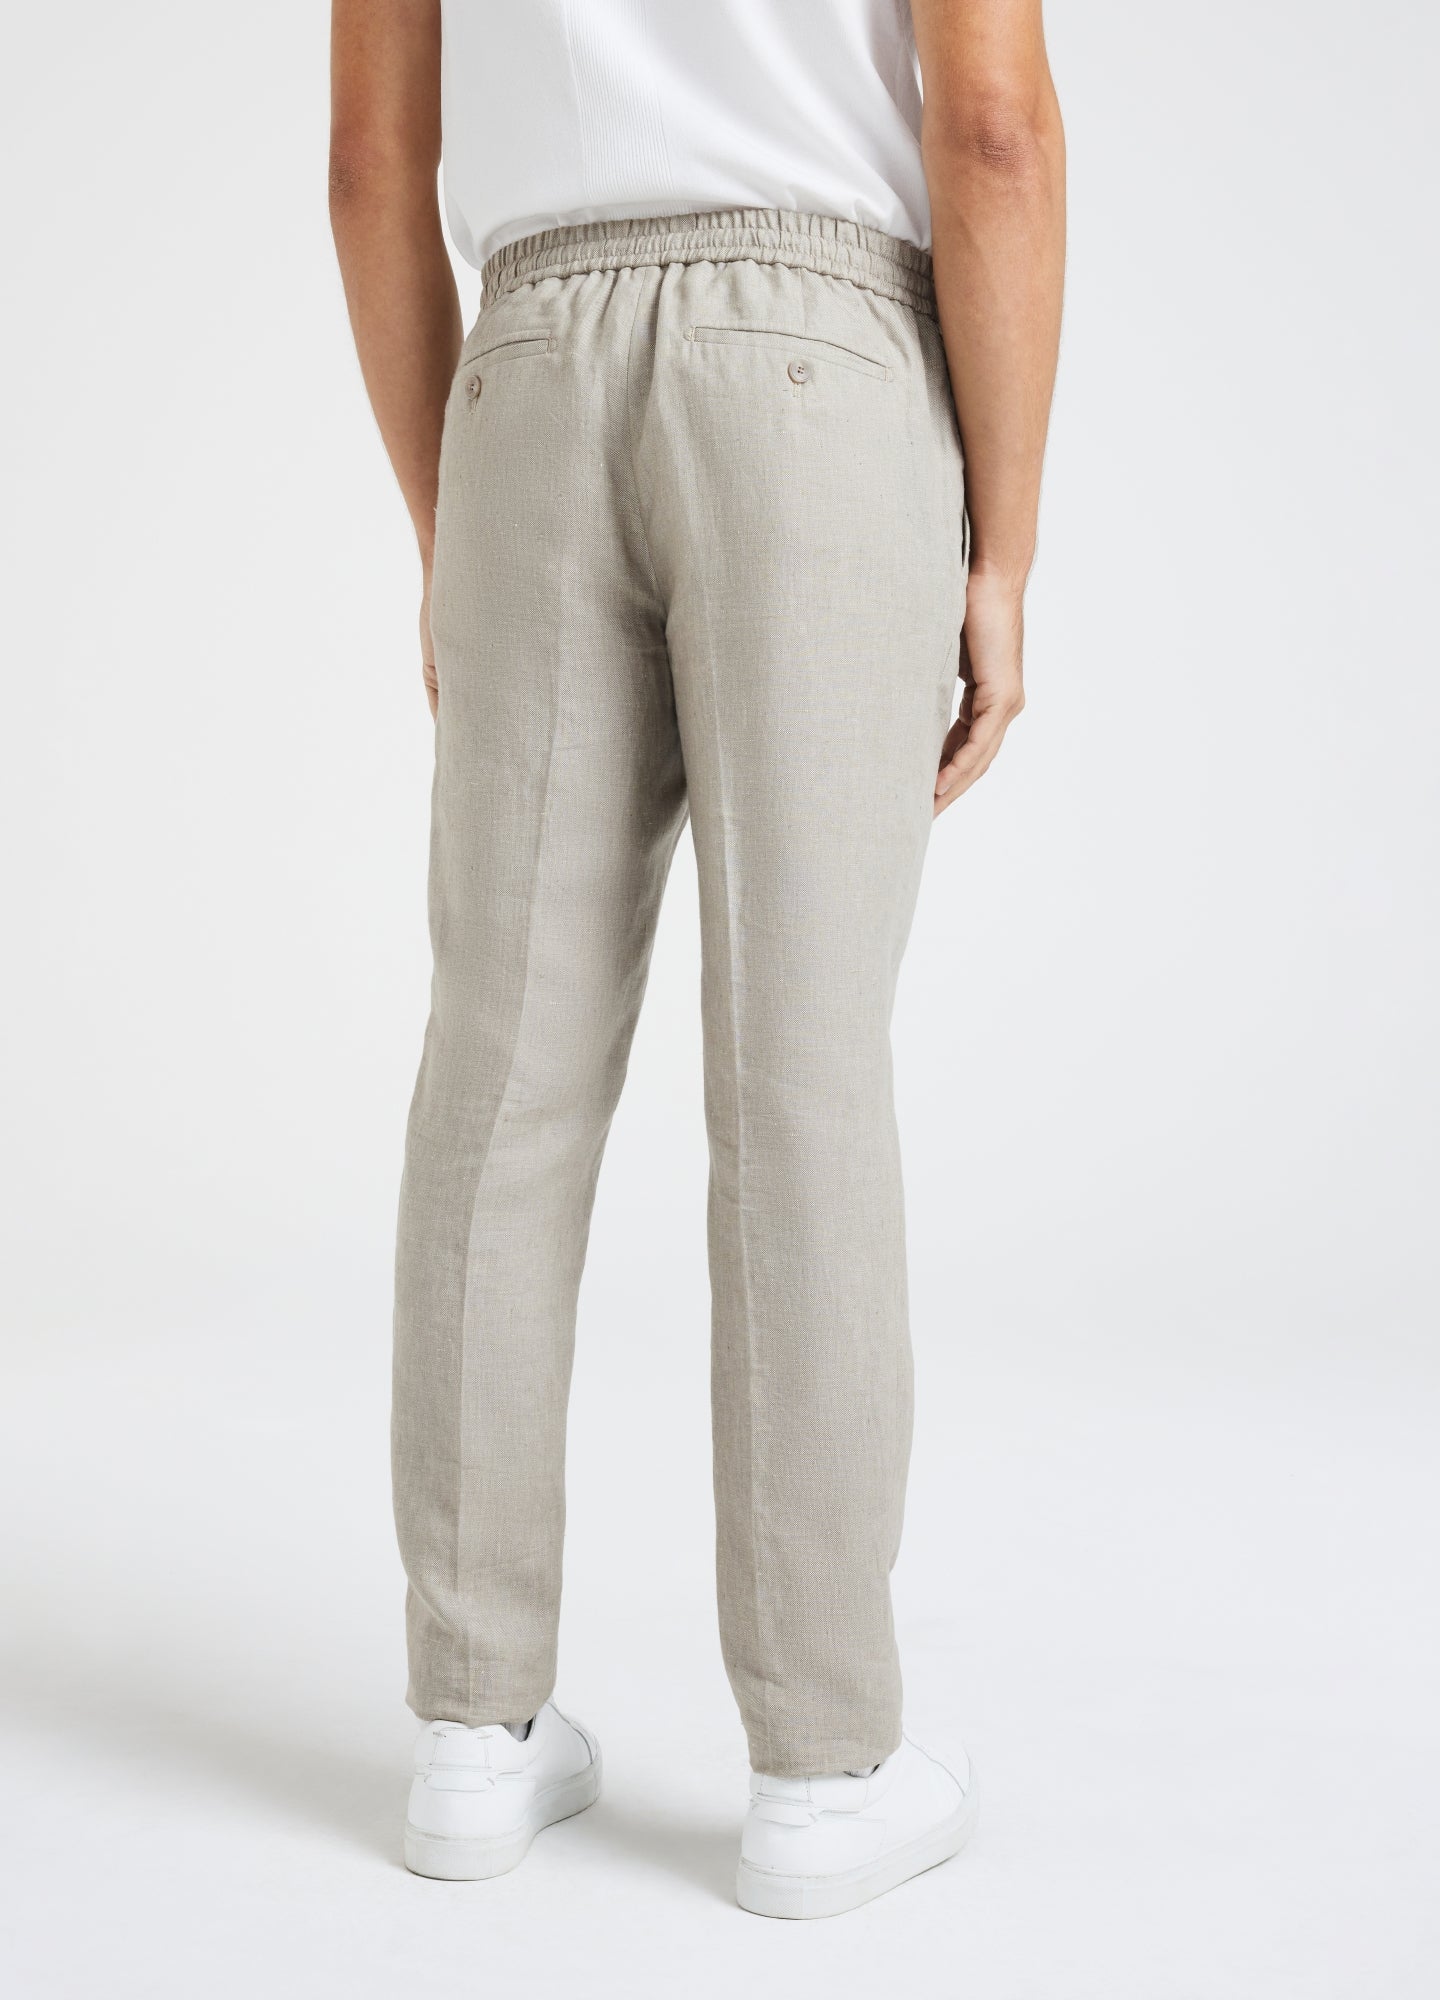 cllios Men's Casual Loose Sports 3/4 Pants Linen Drawstring Plus Size  Trousers Wide Leg Lightweight Baggy Harem Pants - Walmart.com